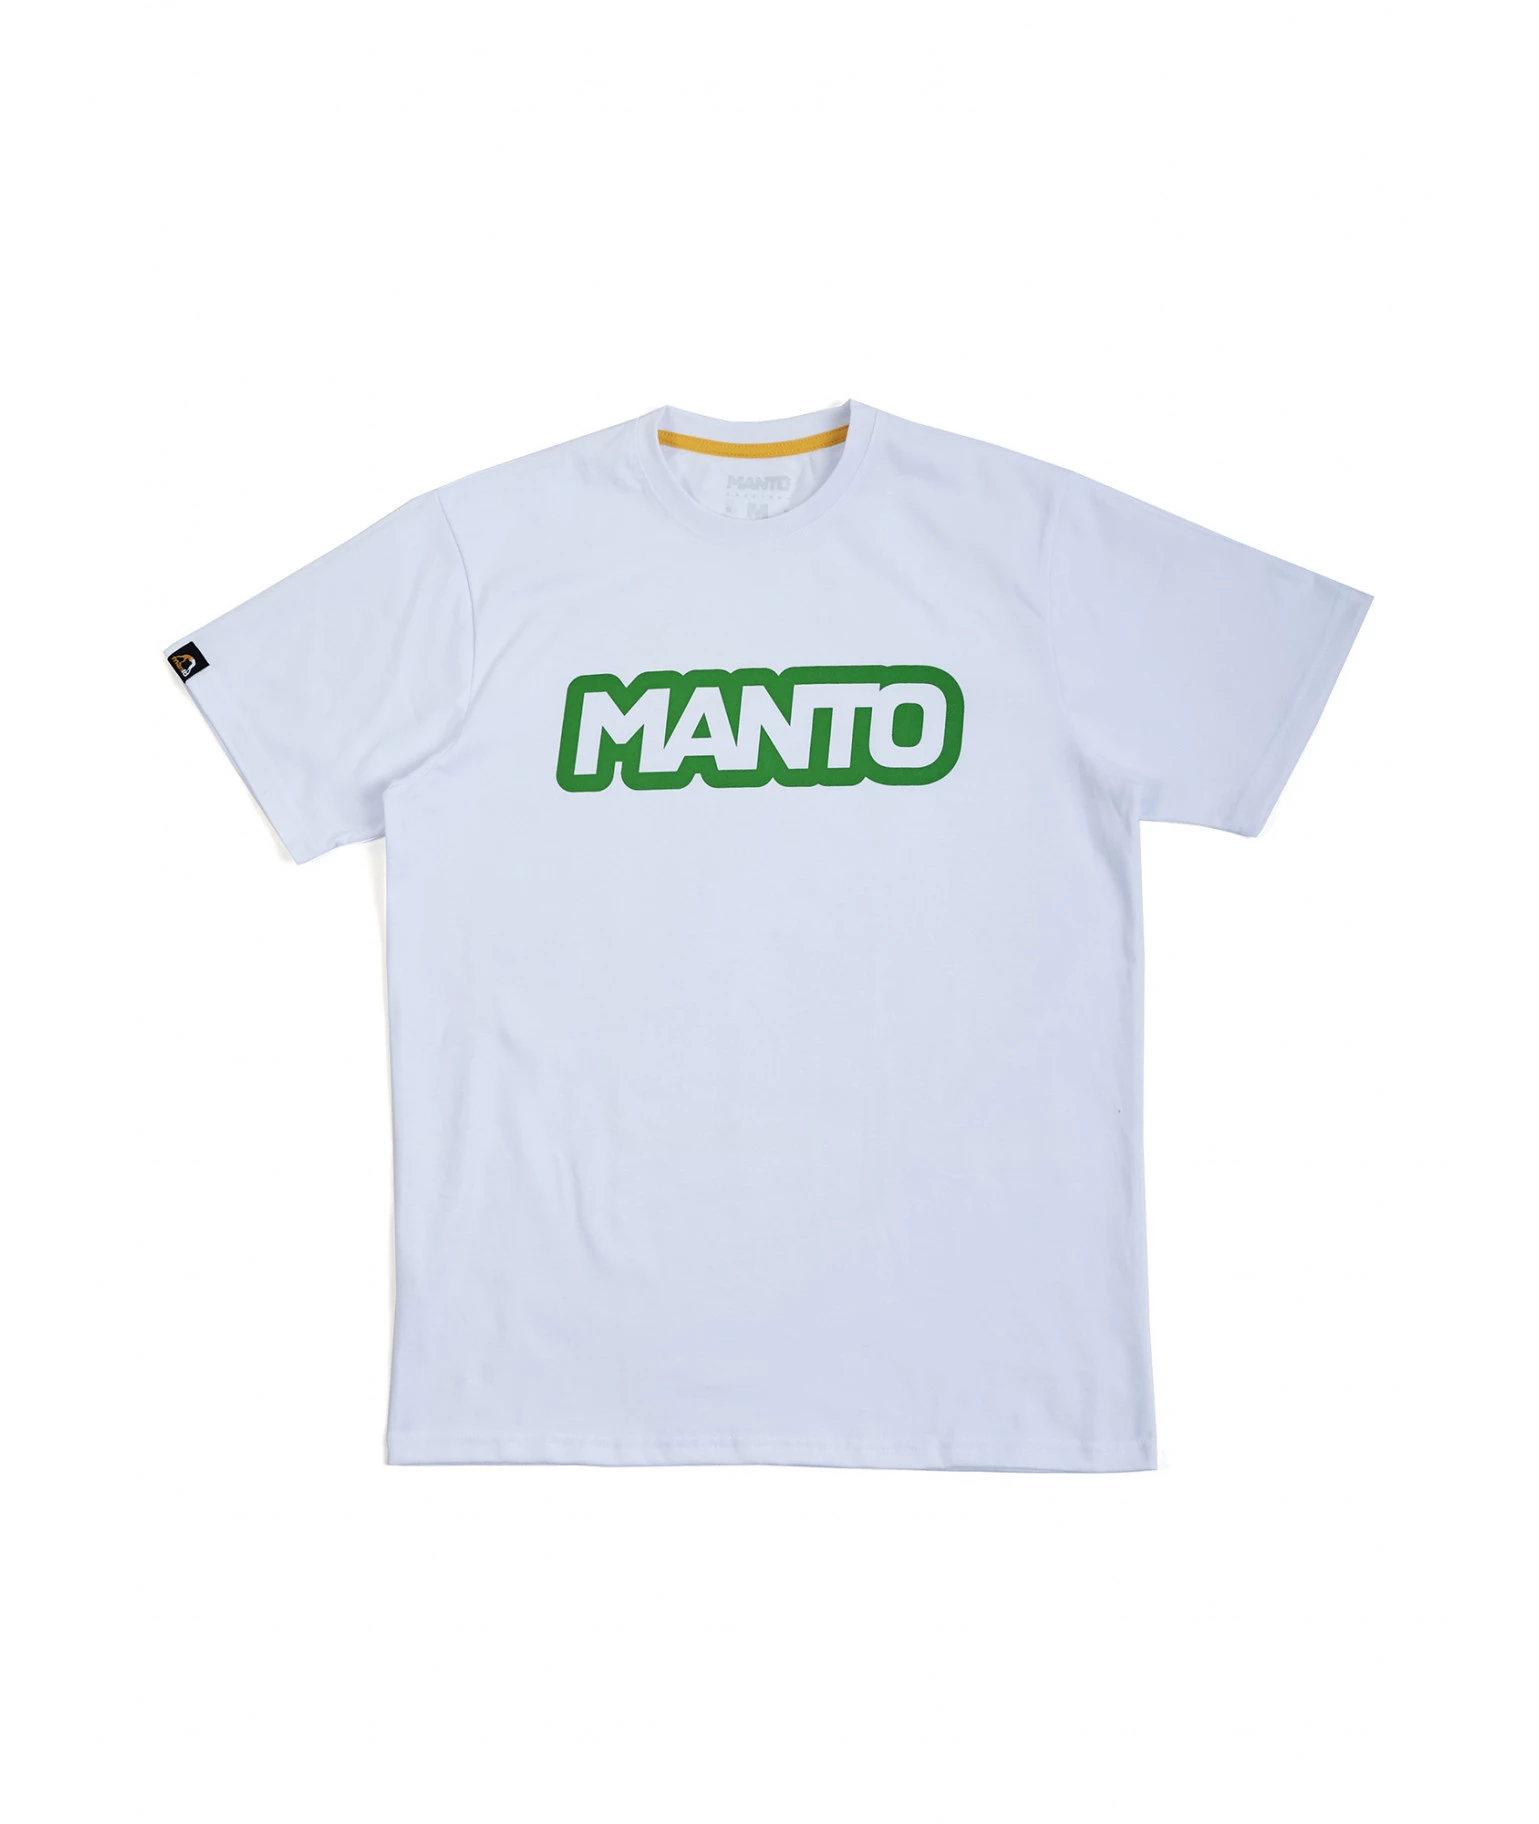 https://mmastyle.com.ua/upload/products/product_50b5b72f5630ea1f9935ef_7180/images/futbolka-manto-t-shirt-block-white.webp